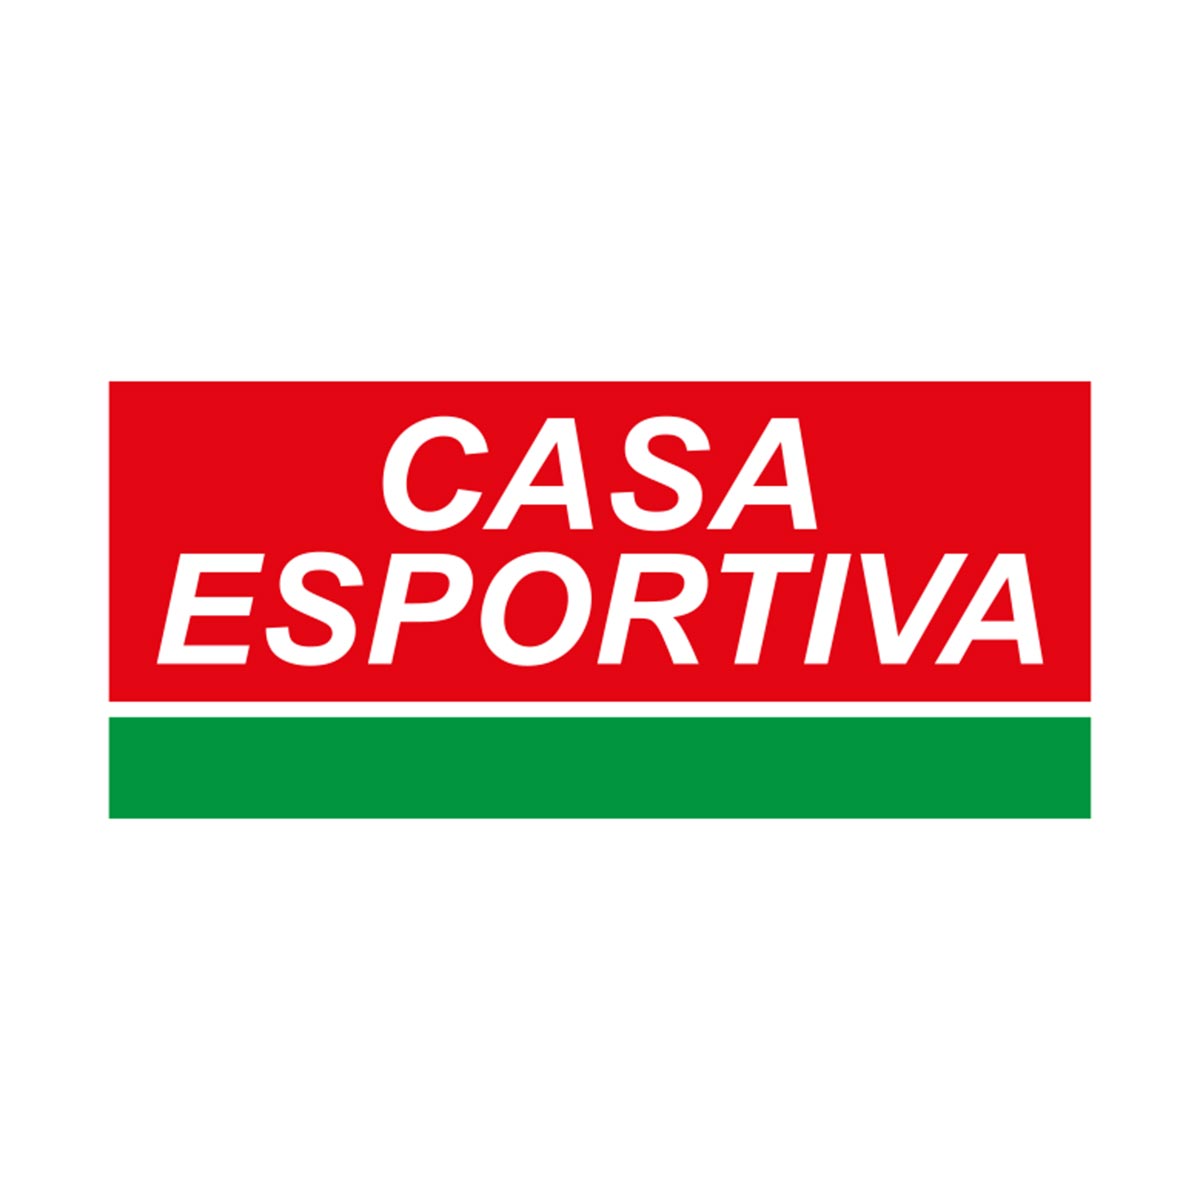 (c) Casaesportiva.com.br